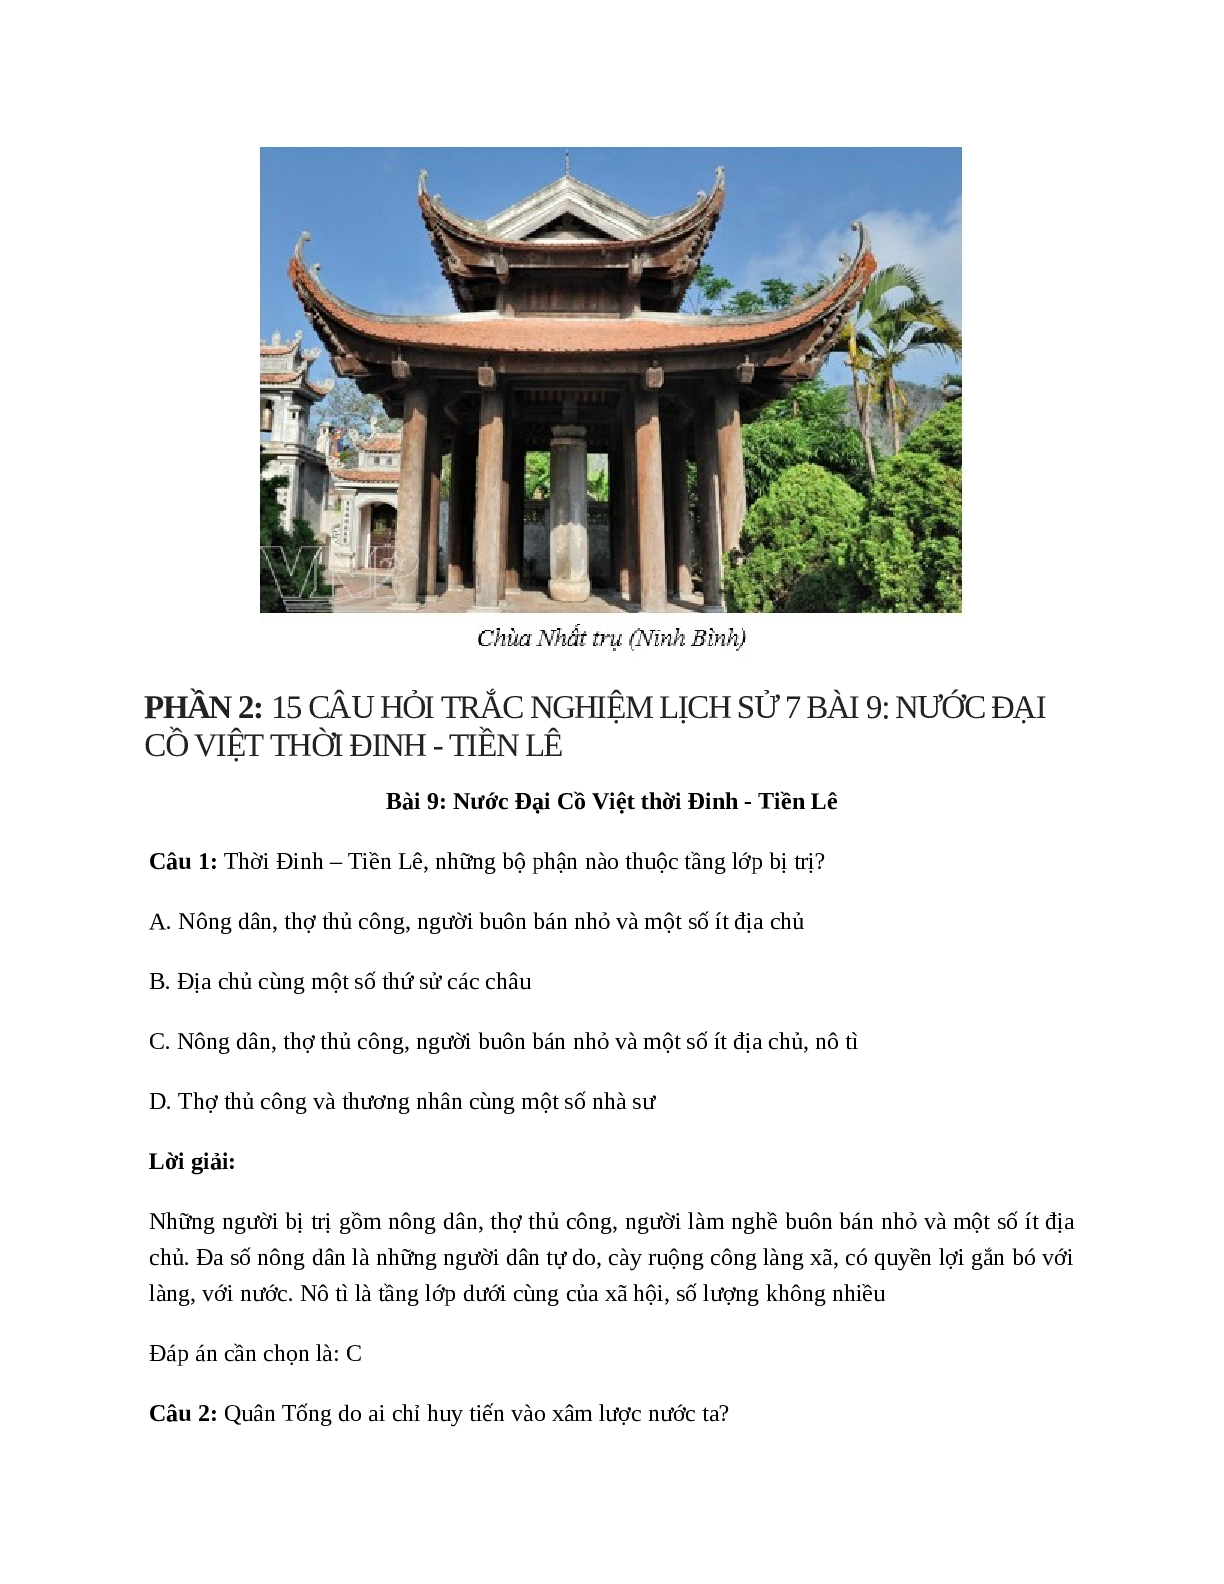 Lịch Sử 7 Bài 9: Nước Đại Cồ Việt thời Đinh - Tiền Lê (trang 6)